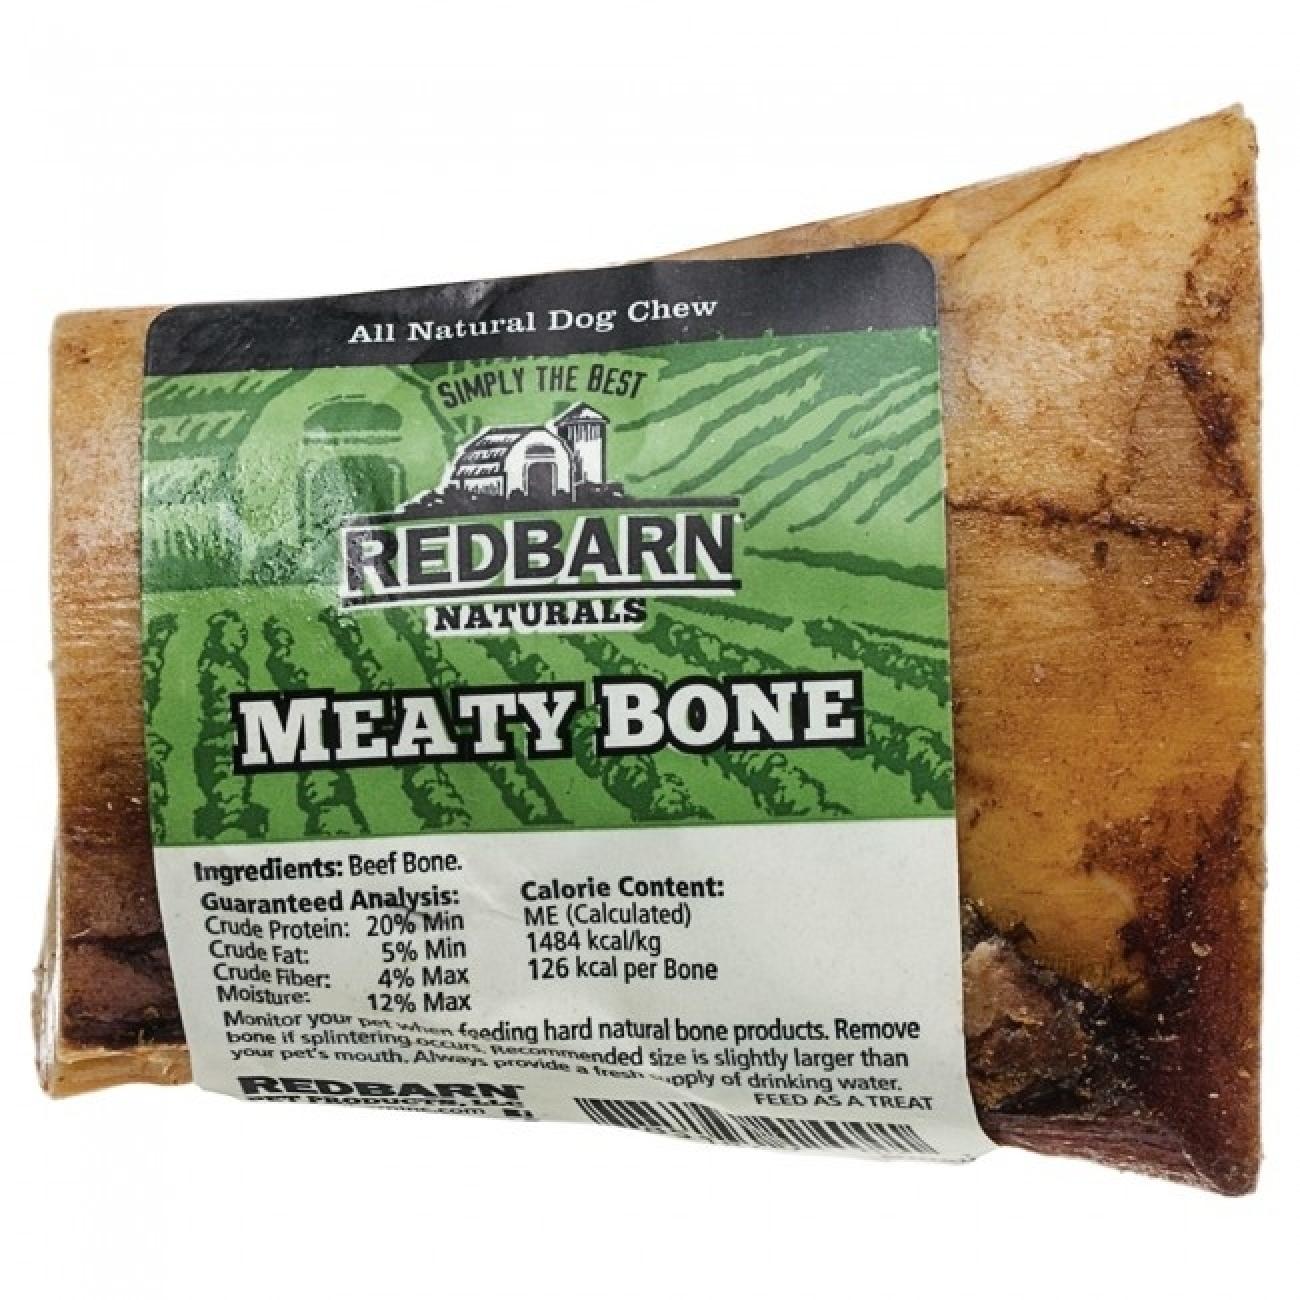 Meaty Bone Dog Treat